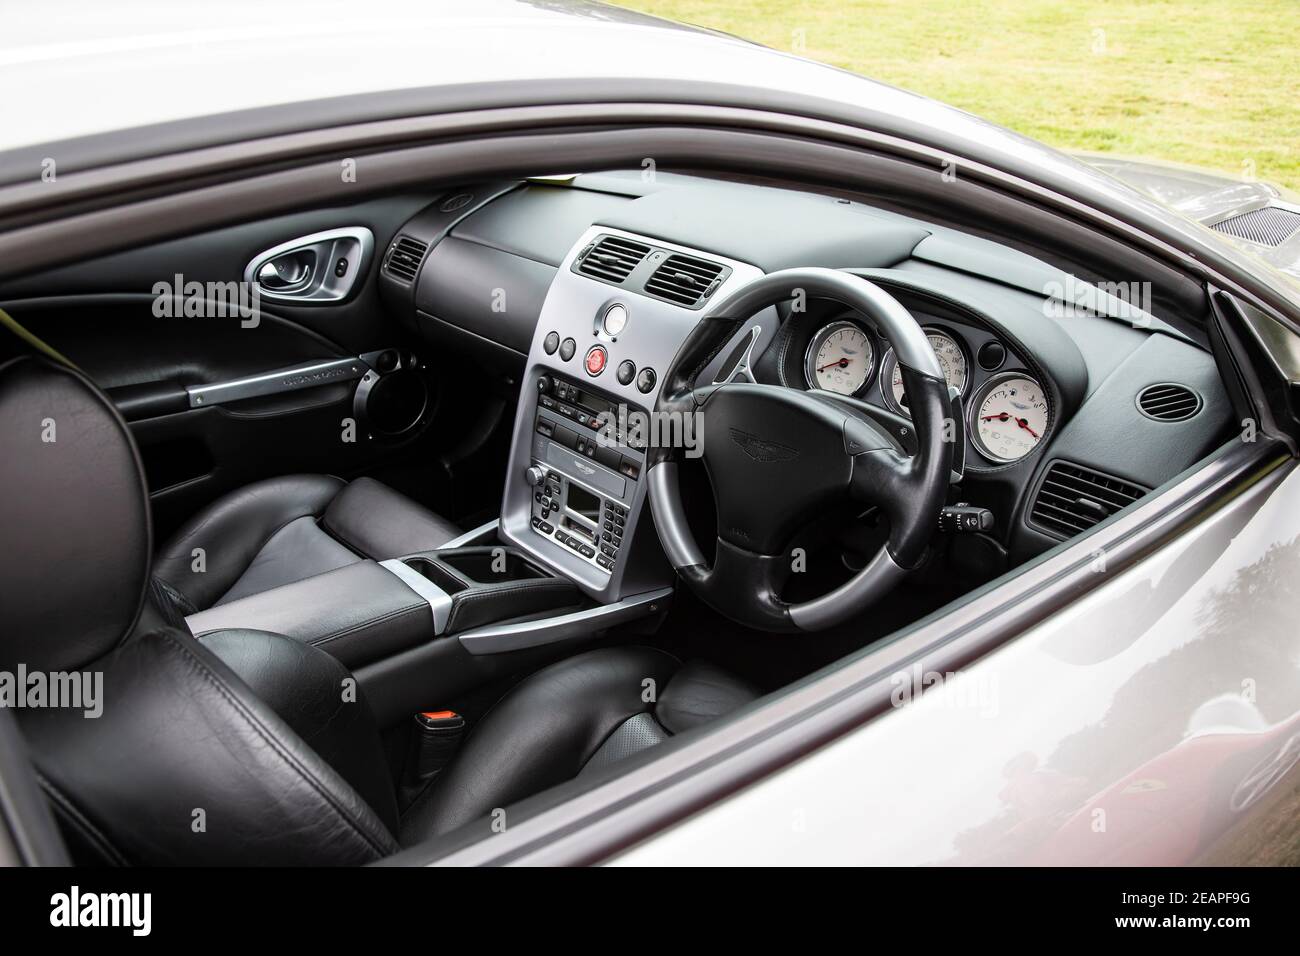 Fahrer- und Passagierkabine eines Aston Martin Vanquish Grand tourer Luxus-Automobil zeigt Armaturenbrett und Design-Layout Stockfoto